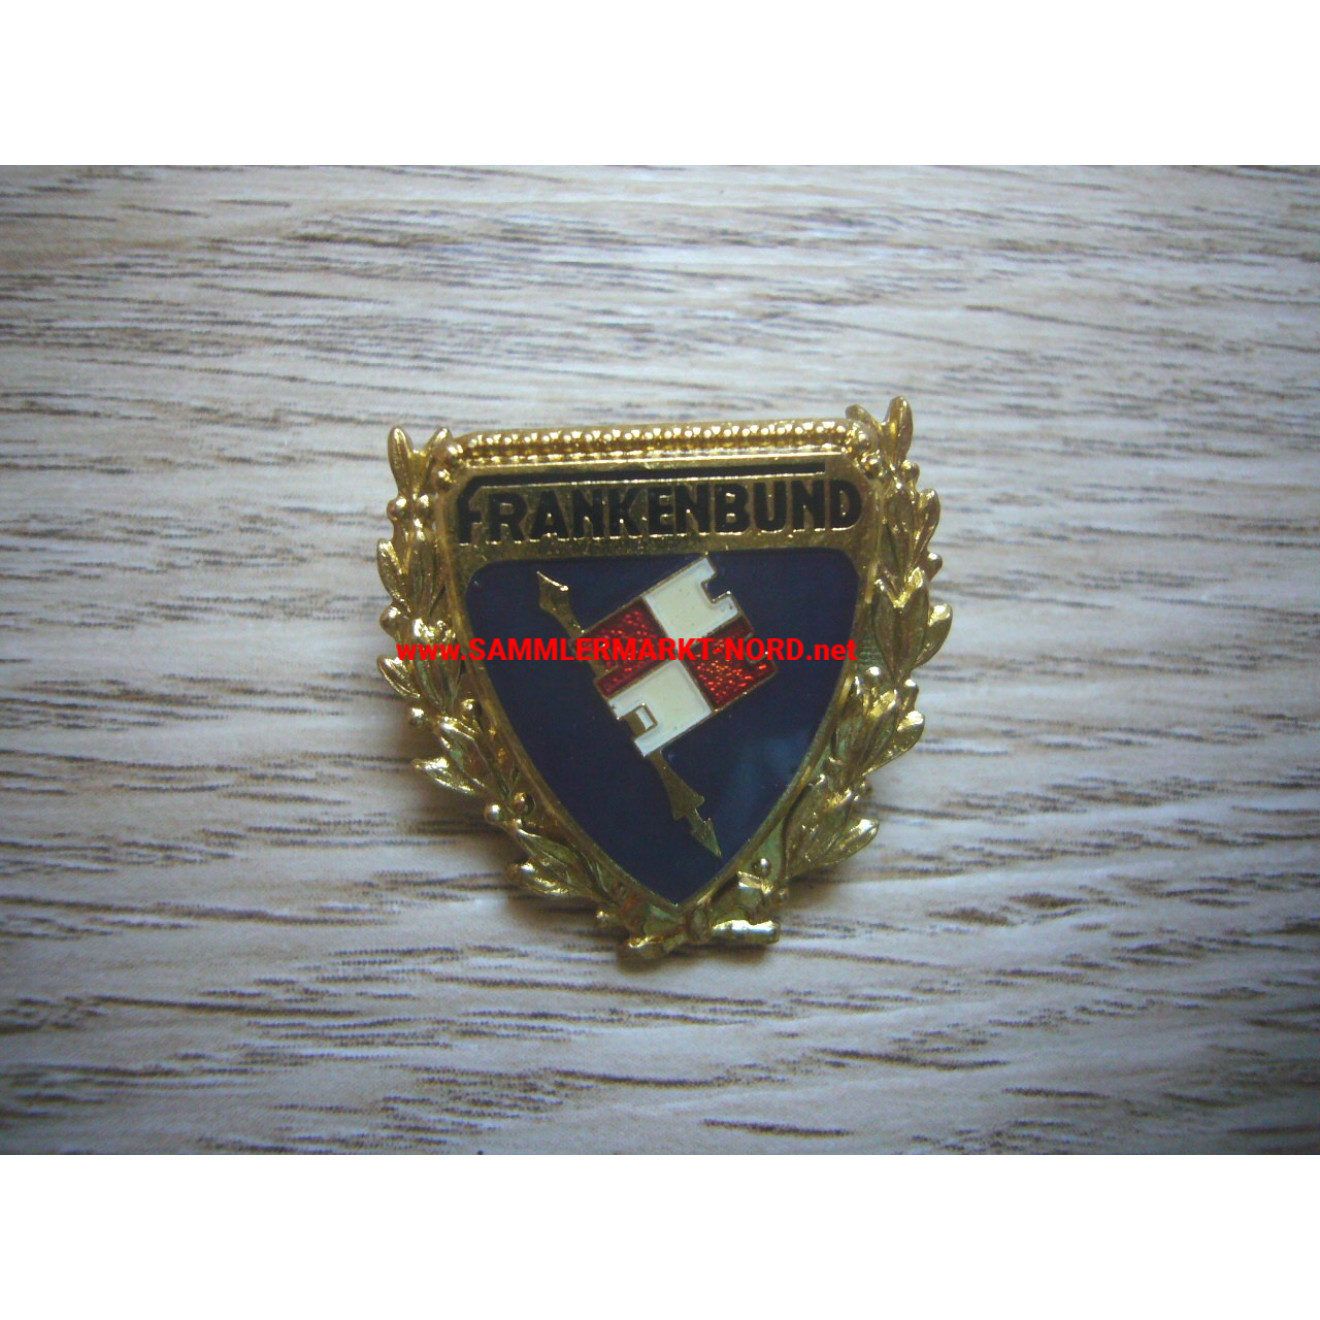 Frankenbund - Golden Badge of Honour